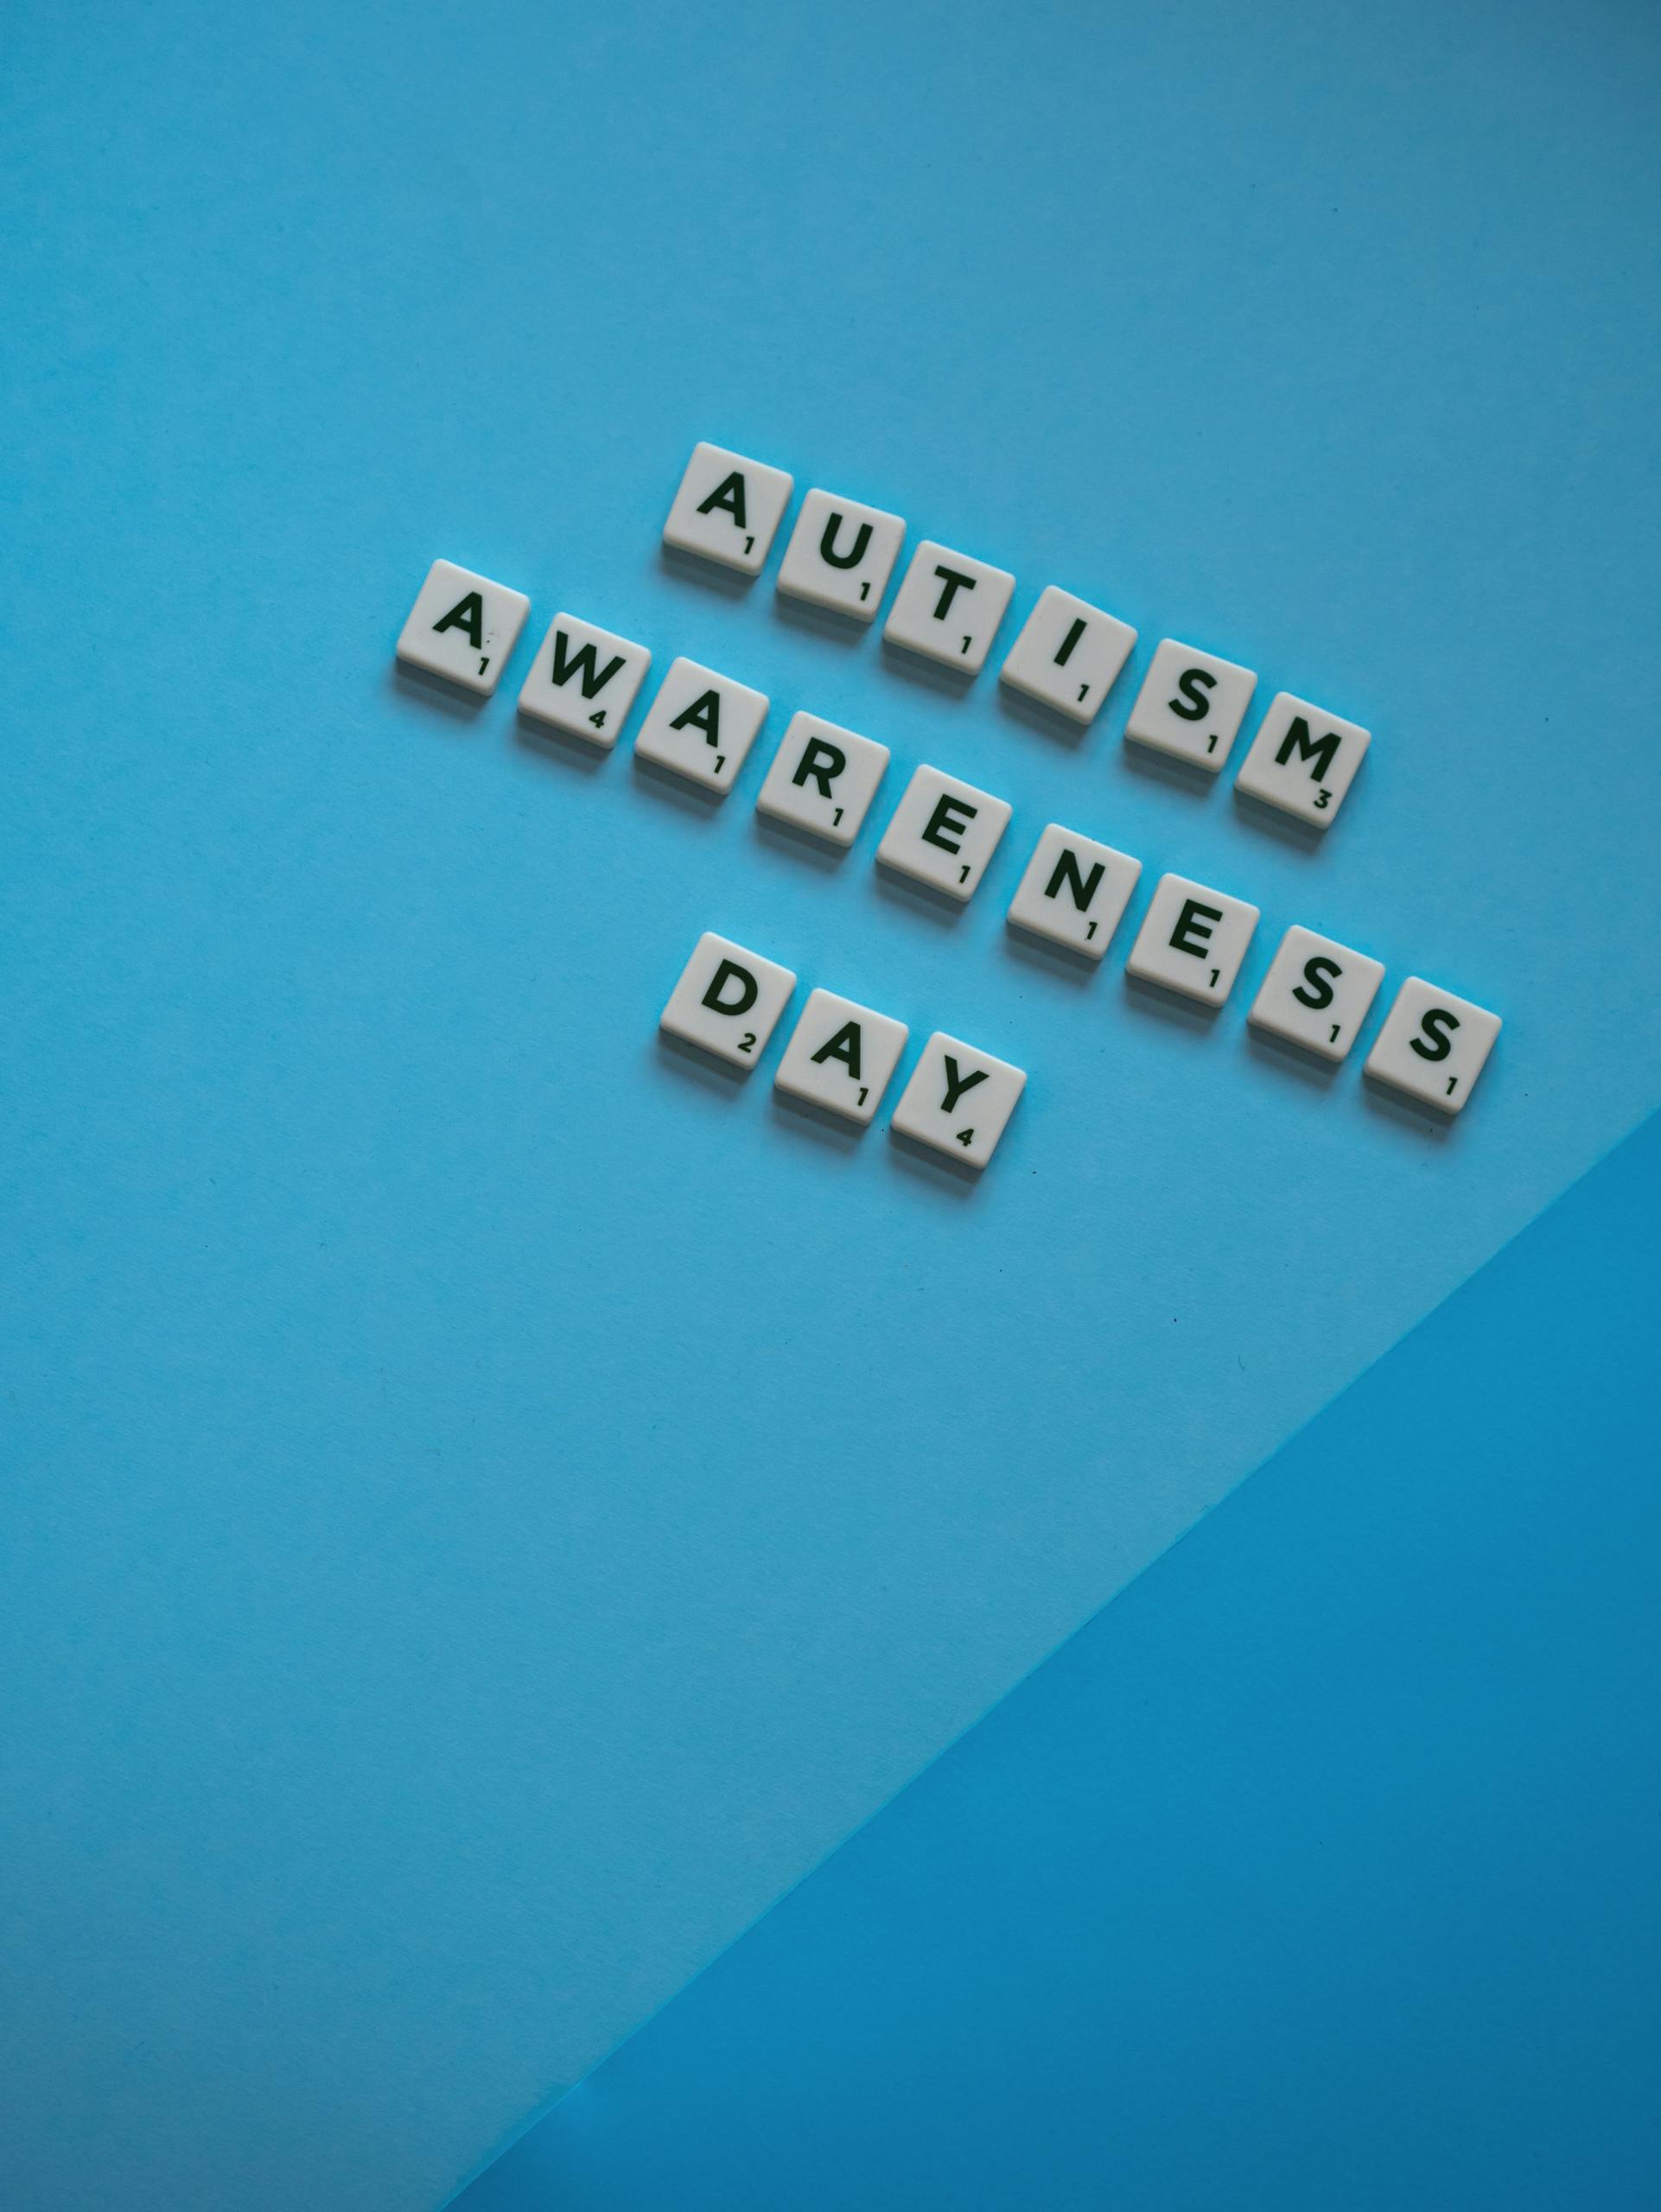 Overhead Shot of Autism Awareness Day in Scrabble Tiles